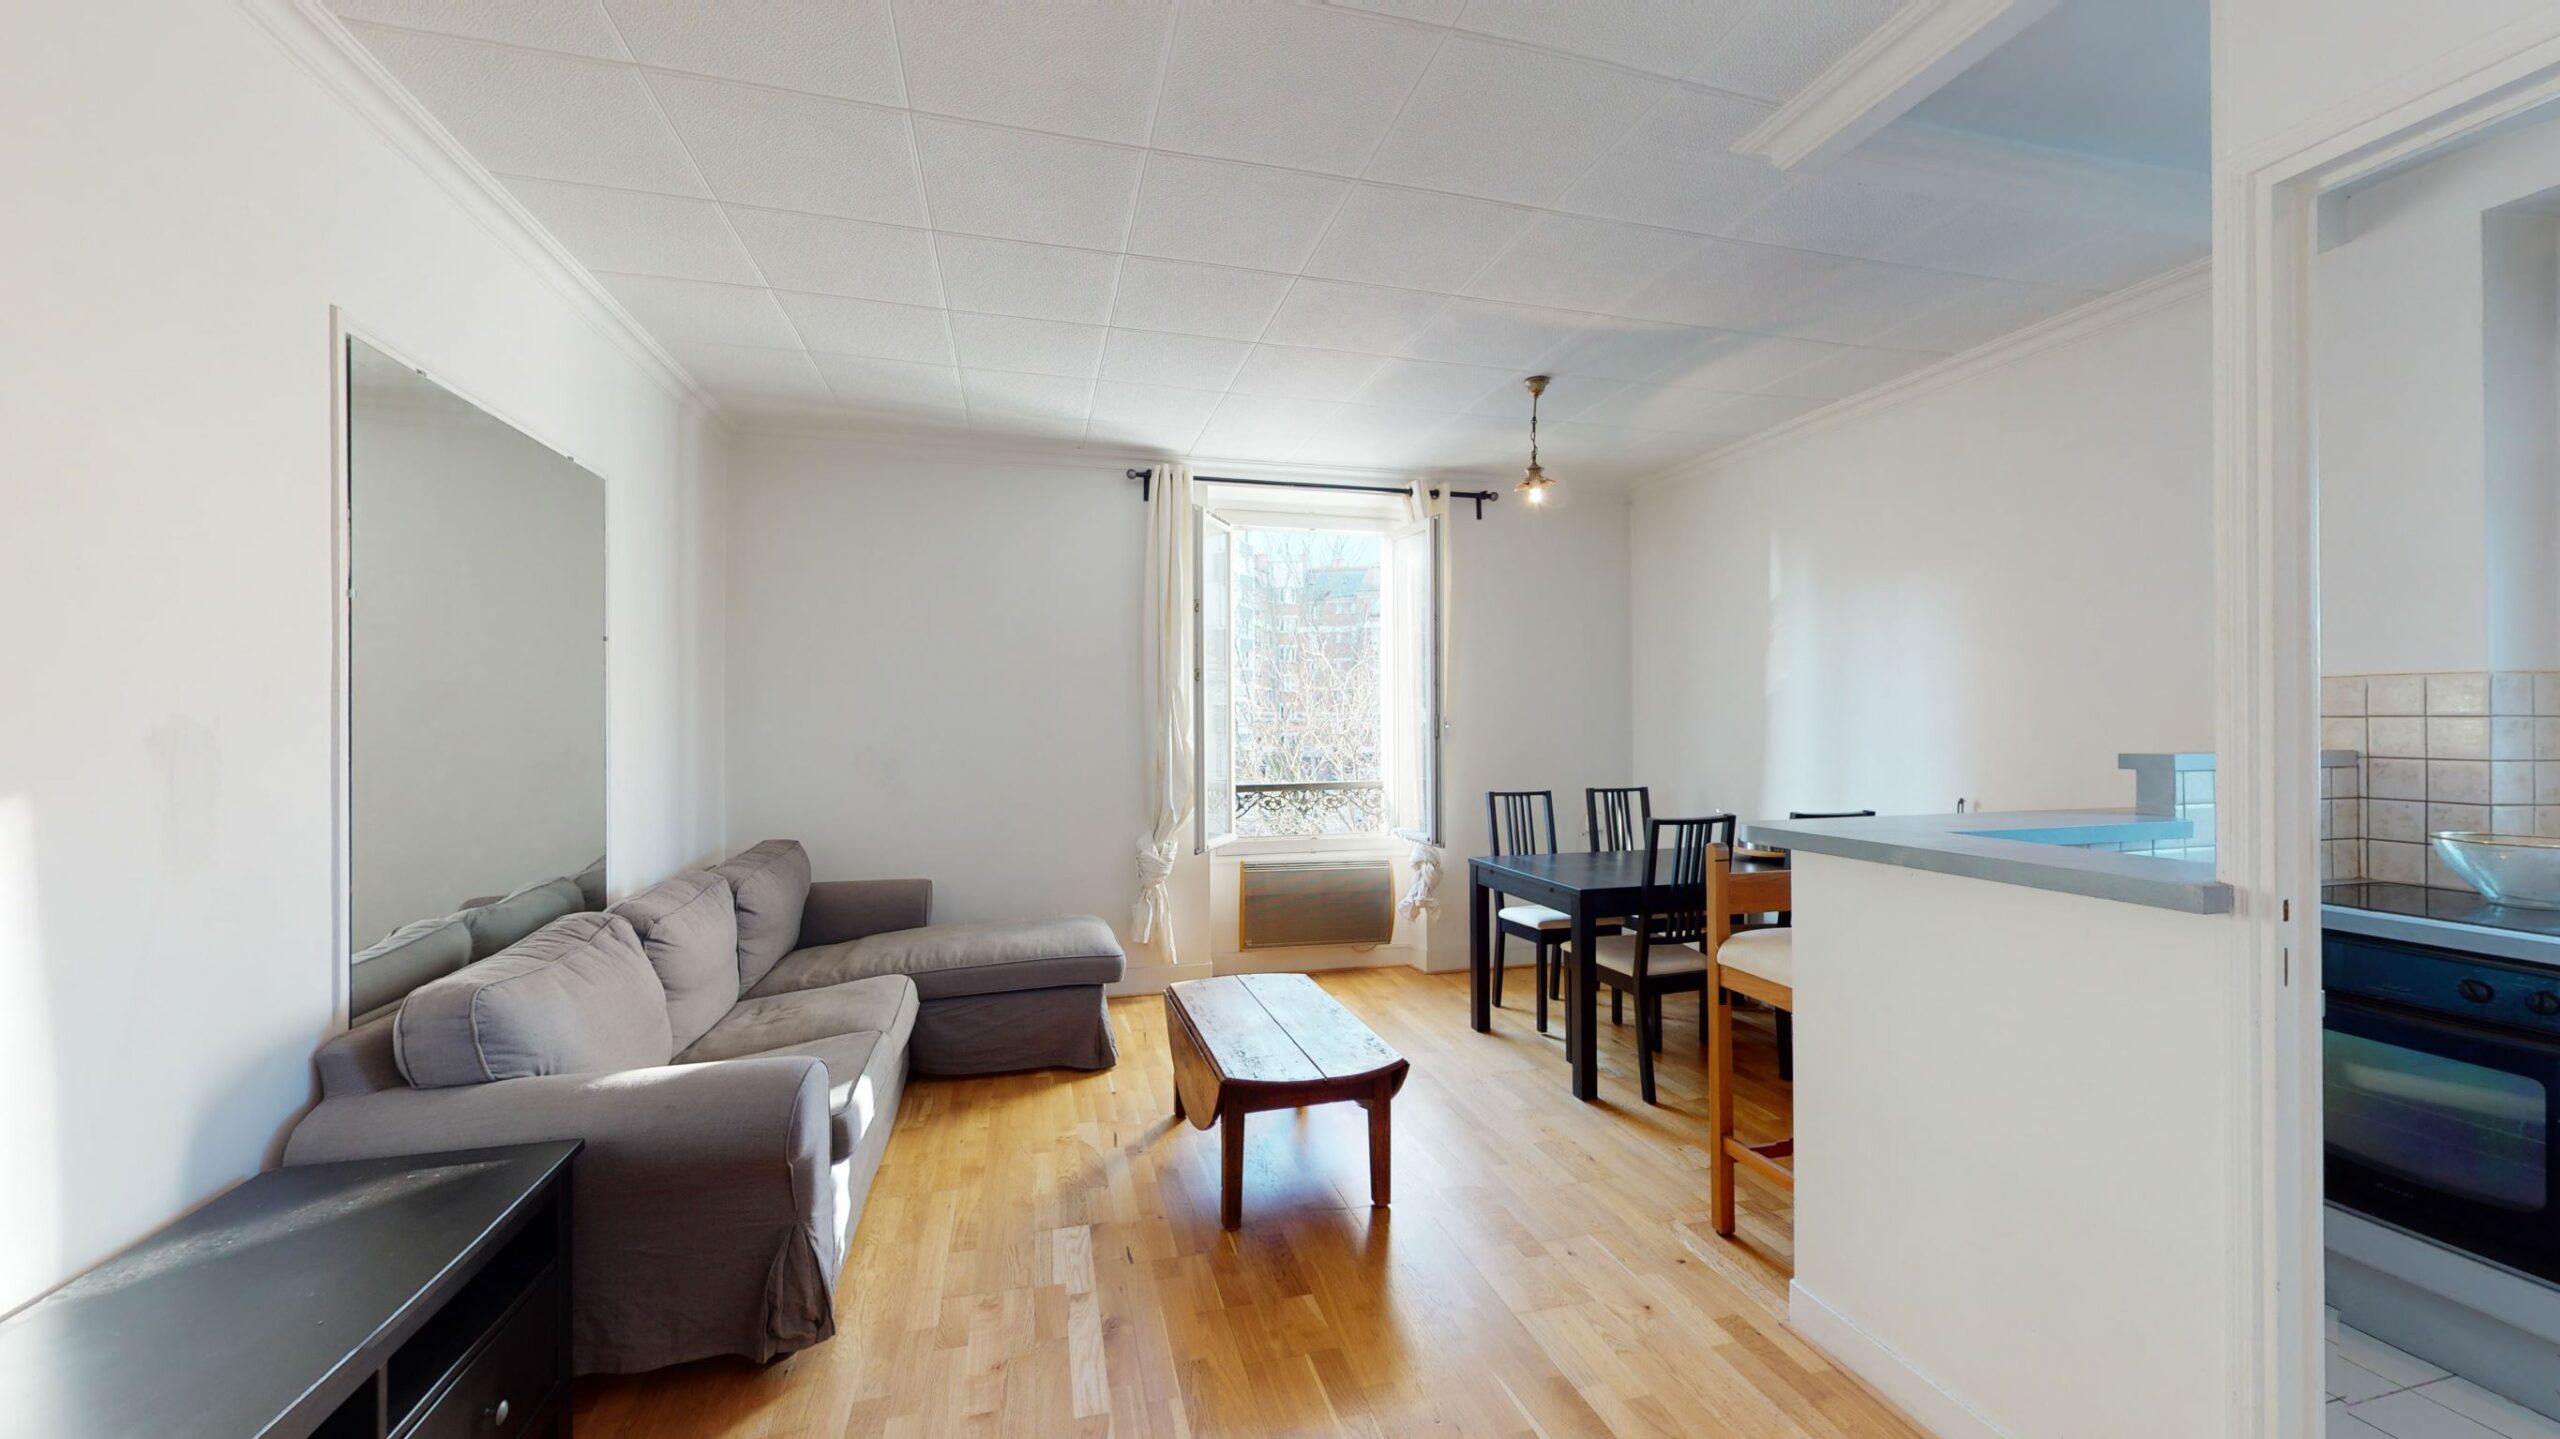 agence immobilière maisons alfort location: 3 pièces 50 m² meublé refait à neuf